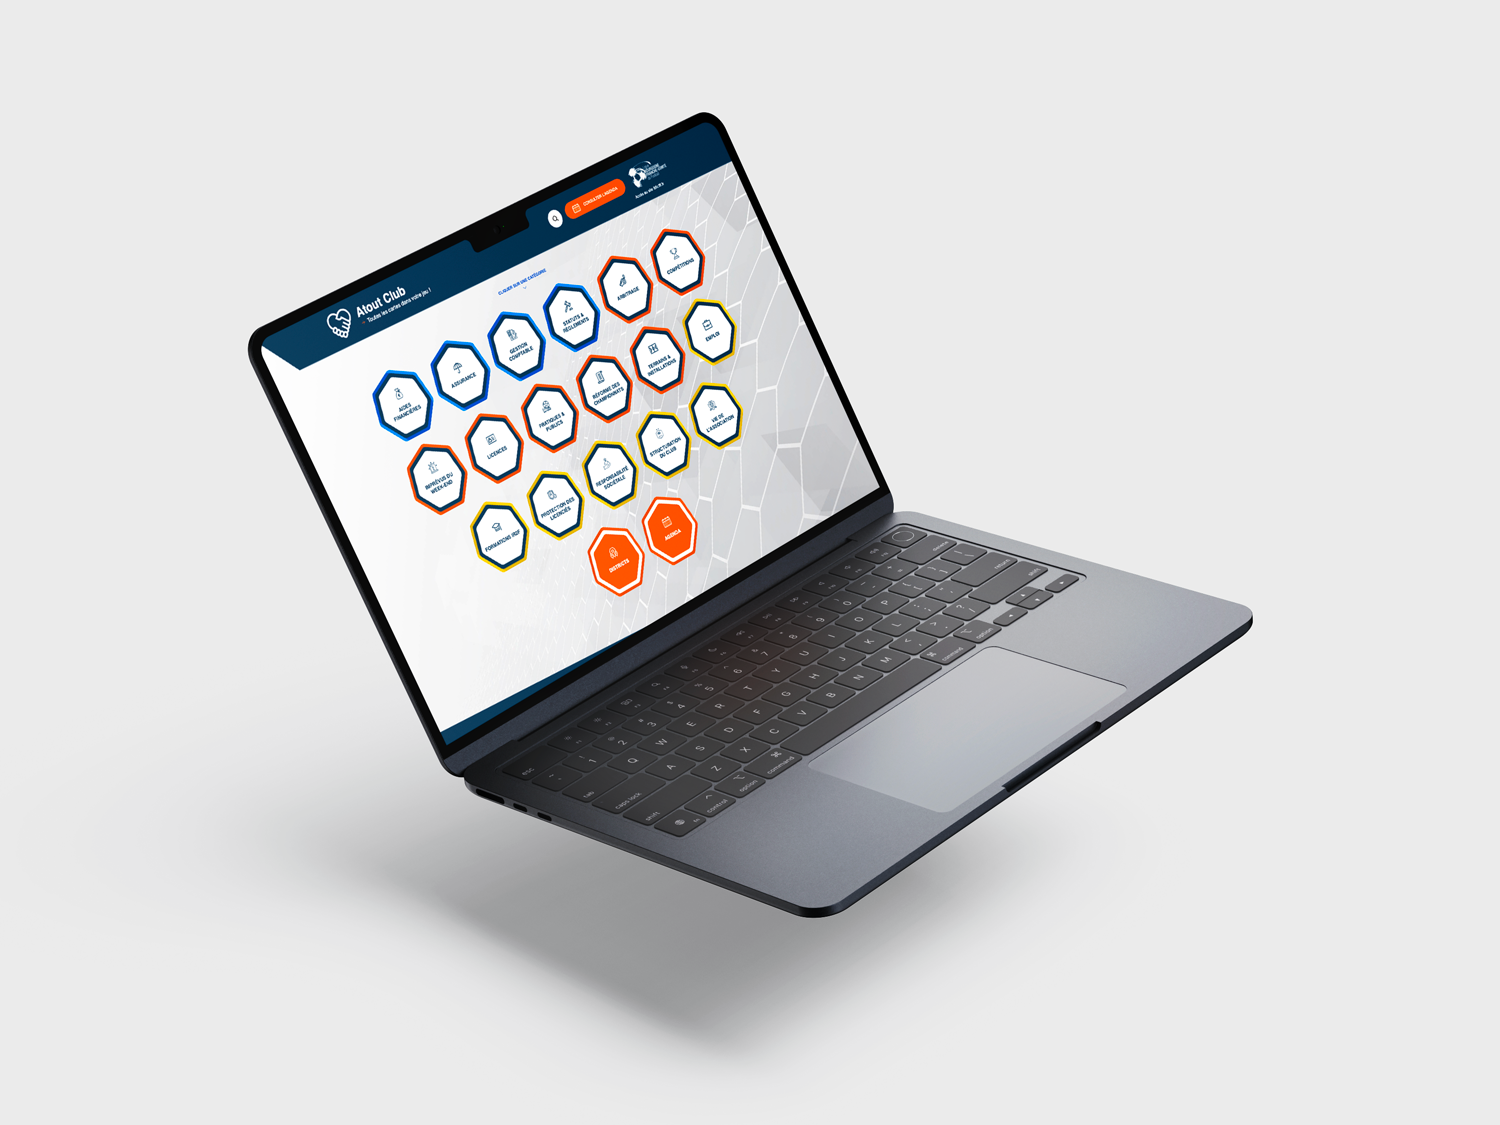 Image d'un ordinateur portable ouvert sur une table montrant un écran affichant une interface utilisateur avec des icônes hexagonales colorées, certaines avec des symboles et des textes, sur le site Ligue de Foot.